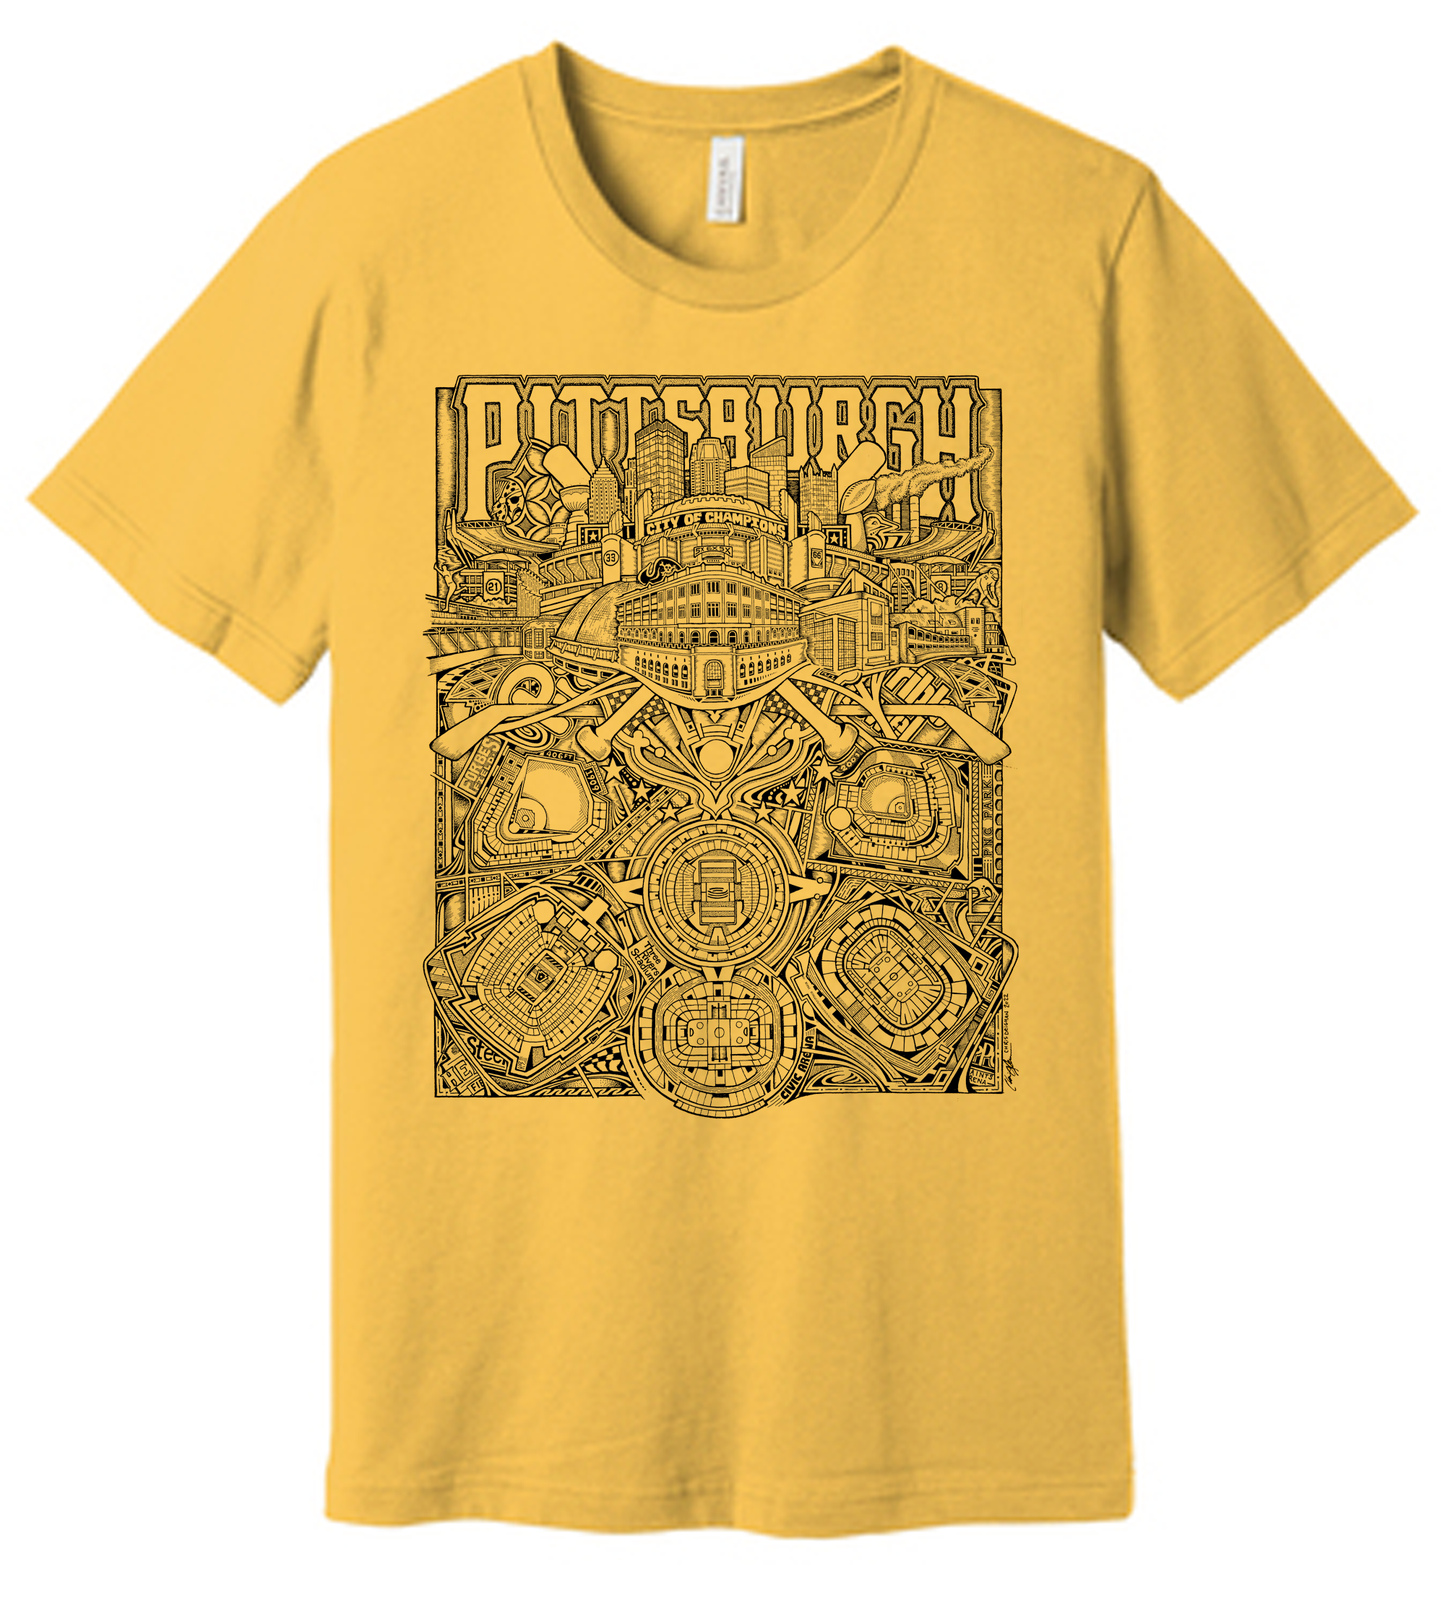 Pittsburgh City of Champions Shirt Yellow